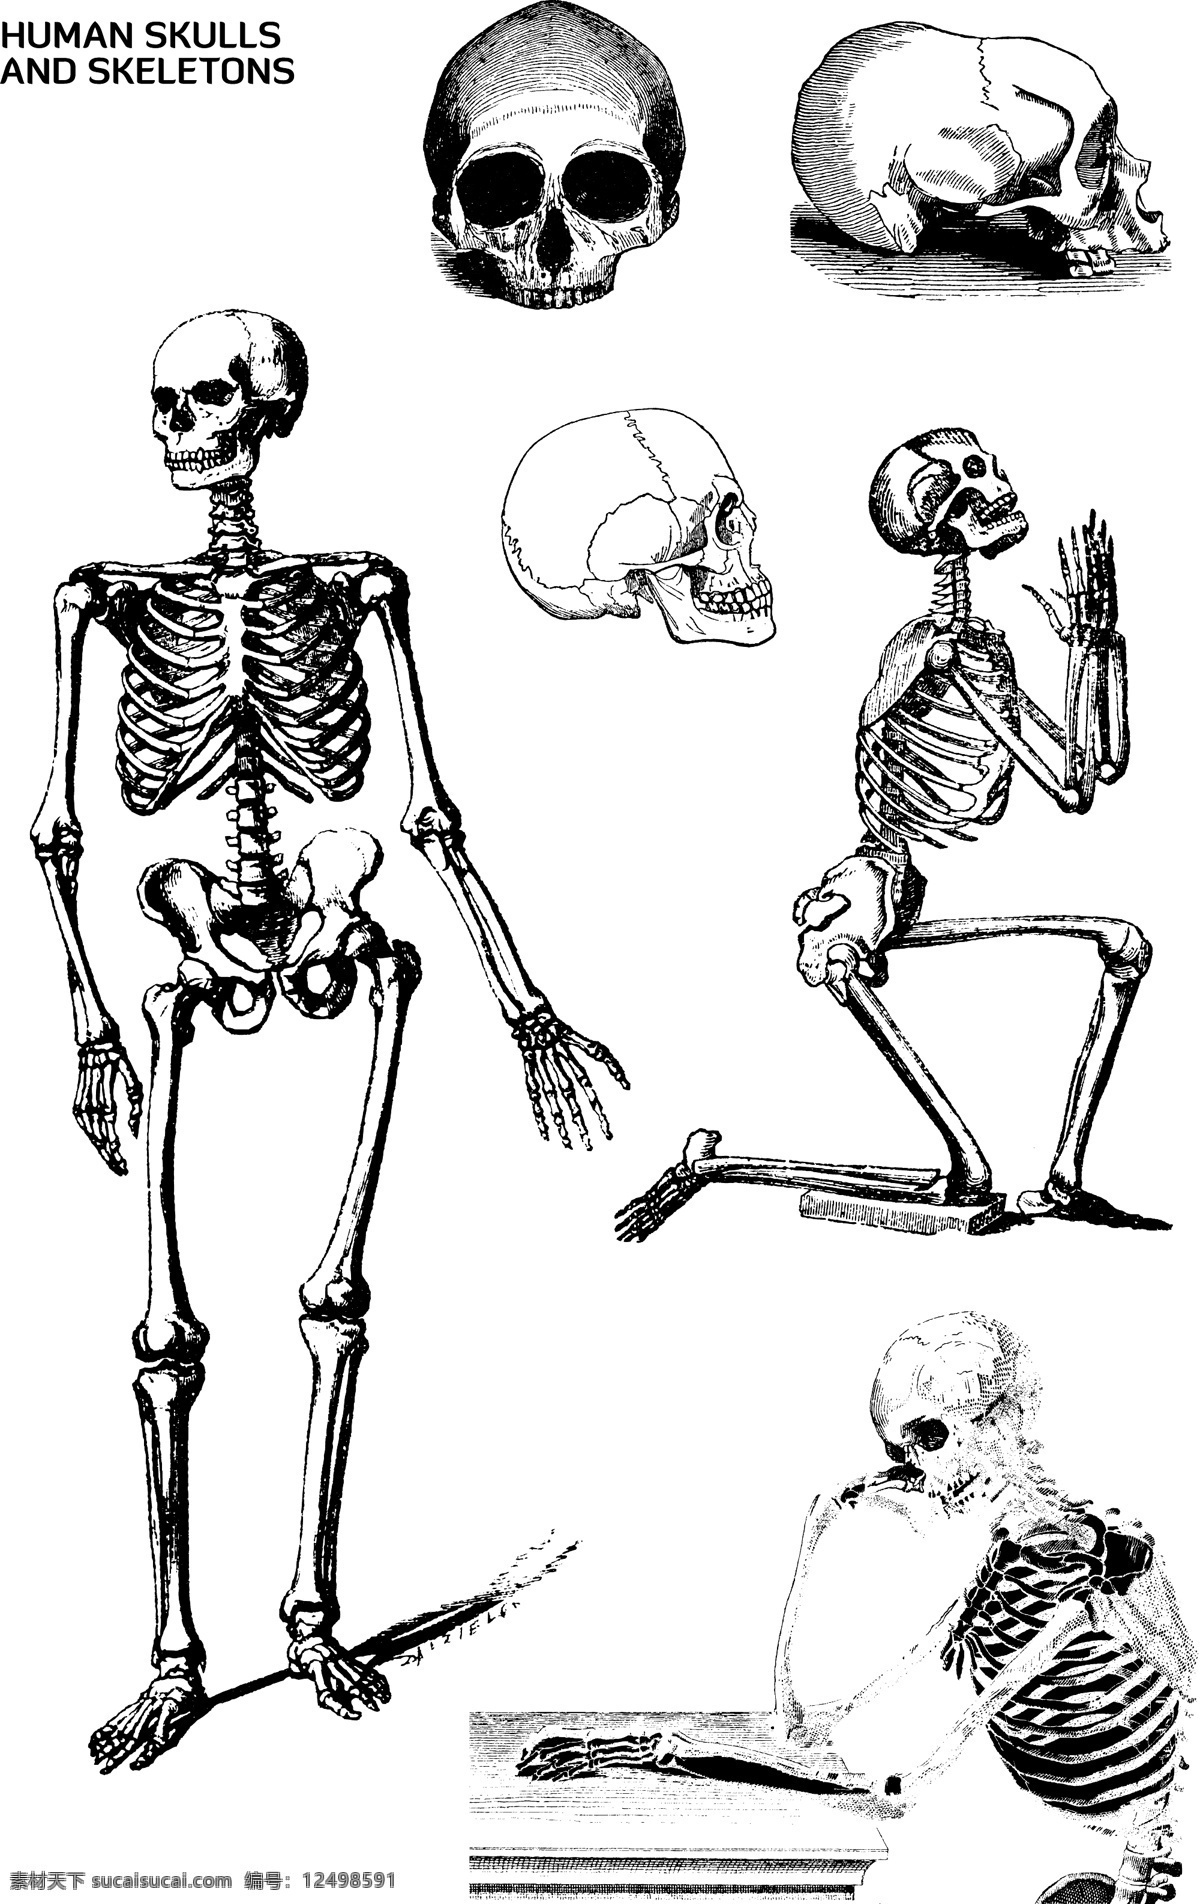 人类 骨头 骨架 矢量 人类骨头骨架 人类骨头矢量 人类骨头素材 人类骨头 人类骨架 人类骨架矢量 人类骨架素材 共享设计矢量 生活百科 医疗保健